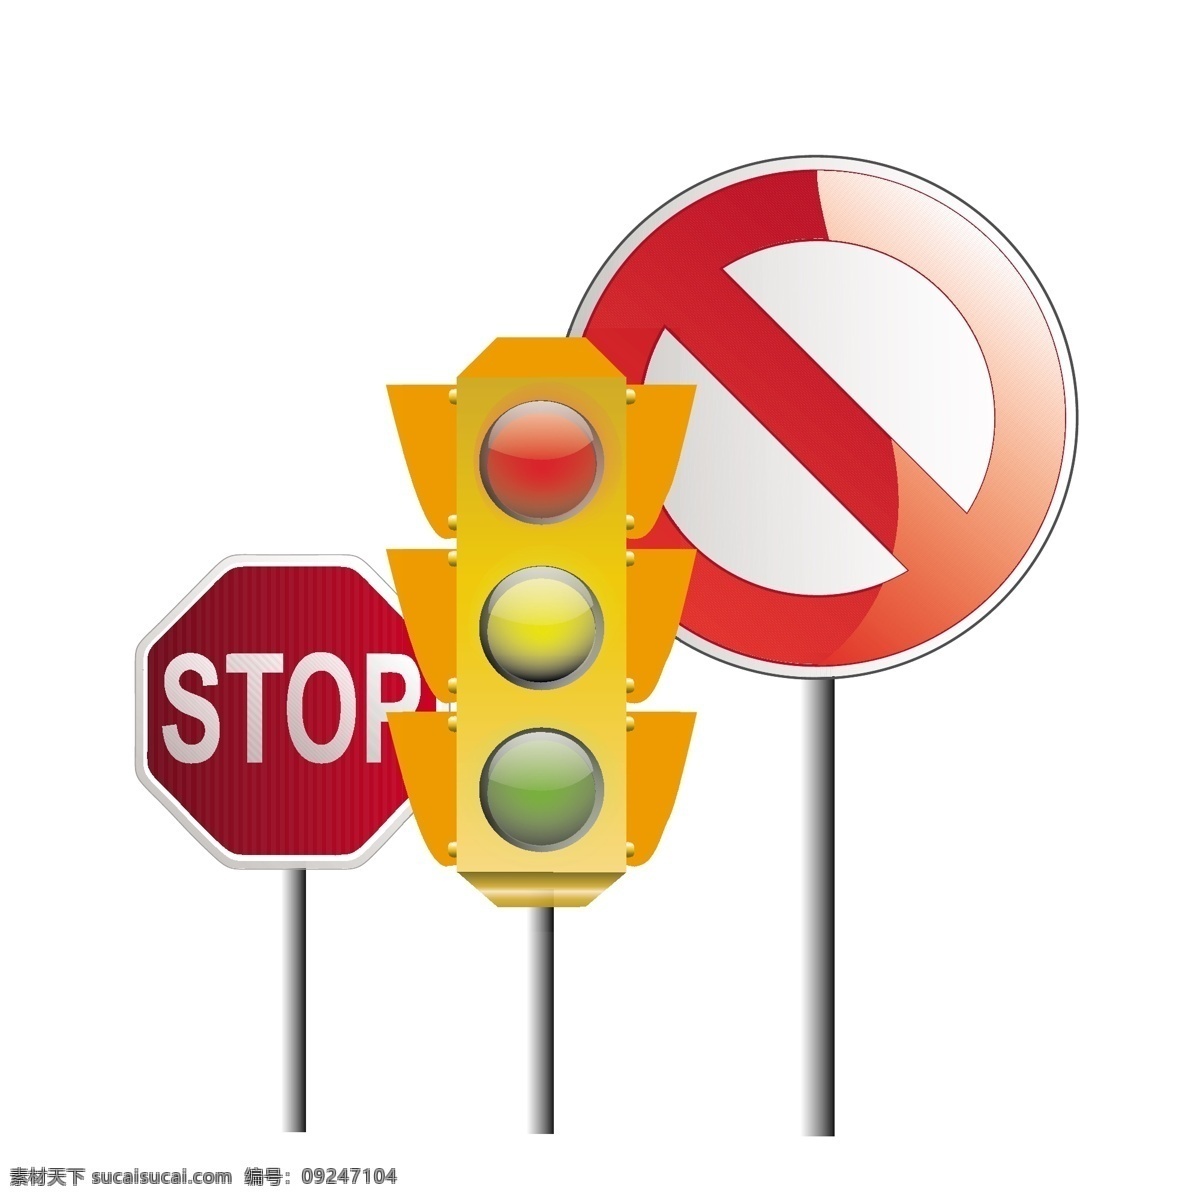 红绿灯 图标 矢量 模板下载 红绿灯图标 stop 禁止图标 红灯 绿灯 黄灯 马路灯 交通灯 生活百科 矢量素材 白色